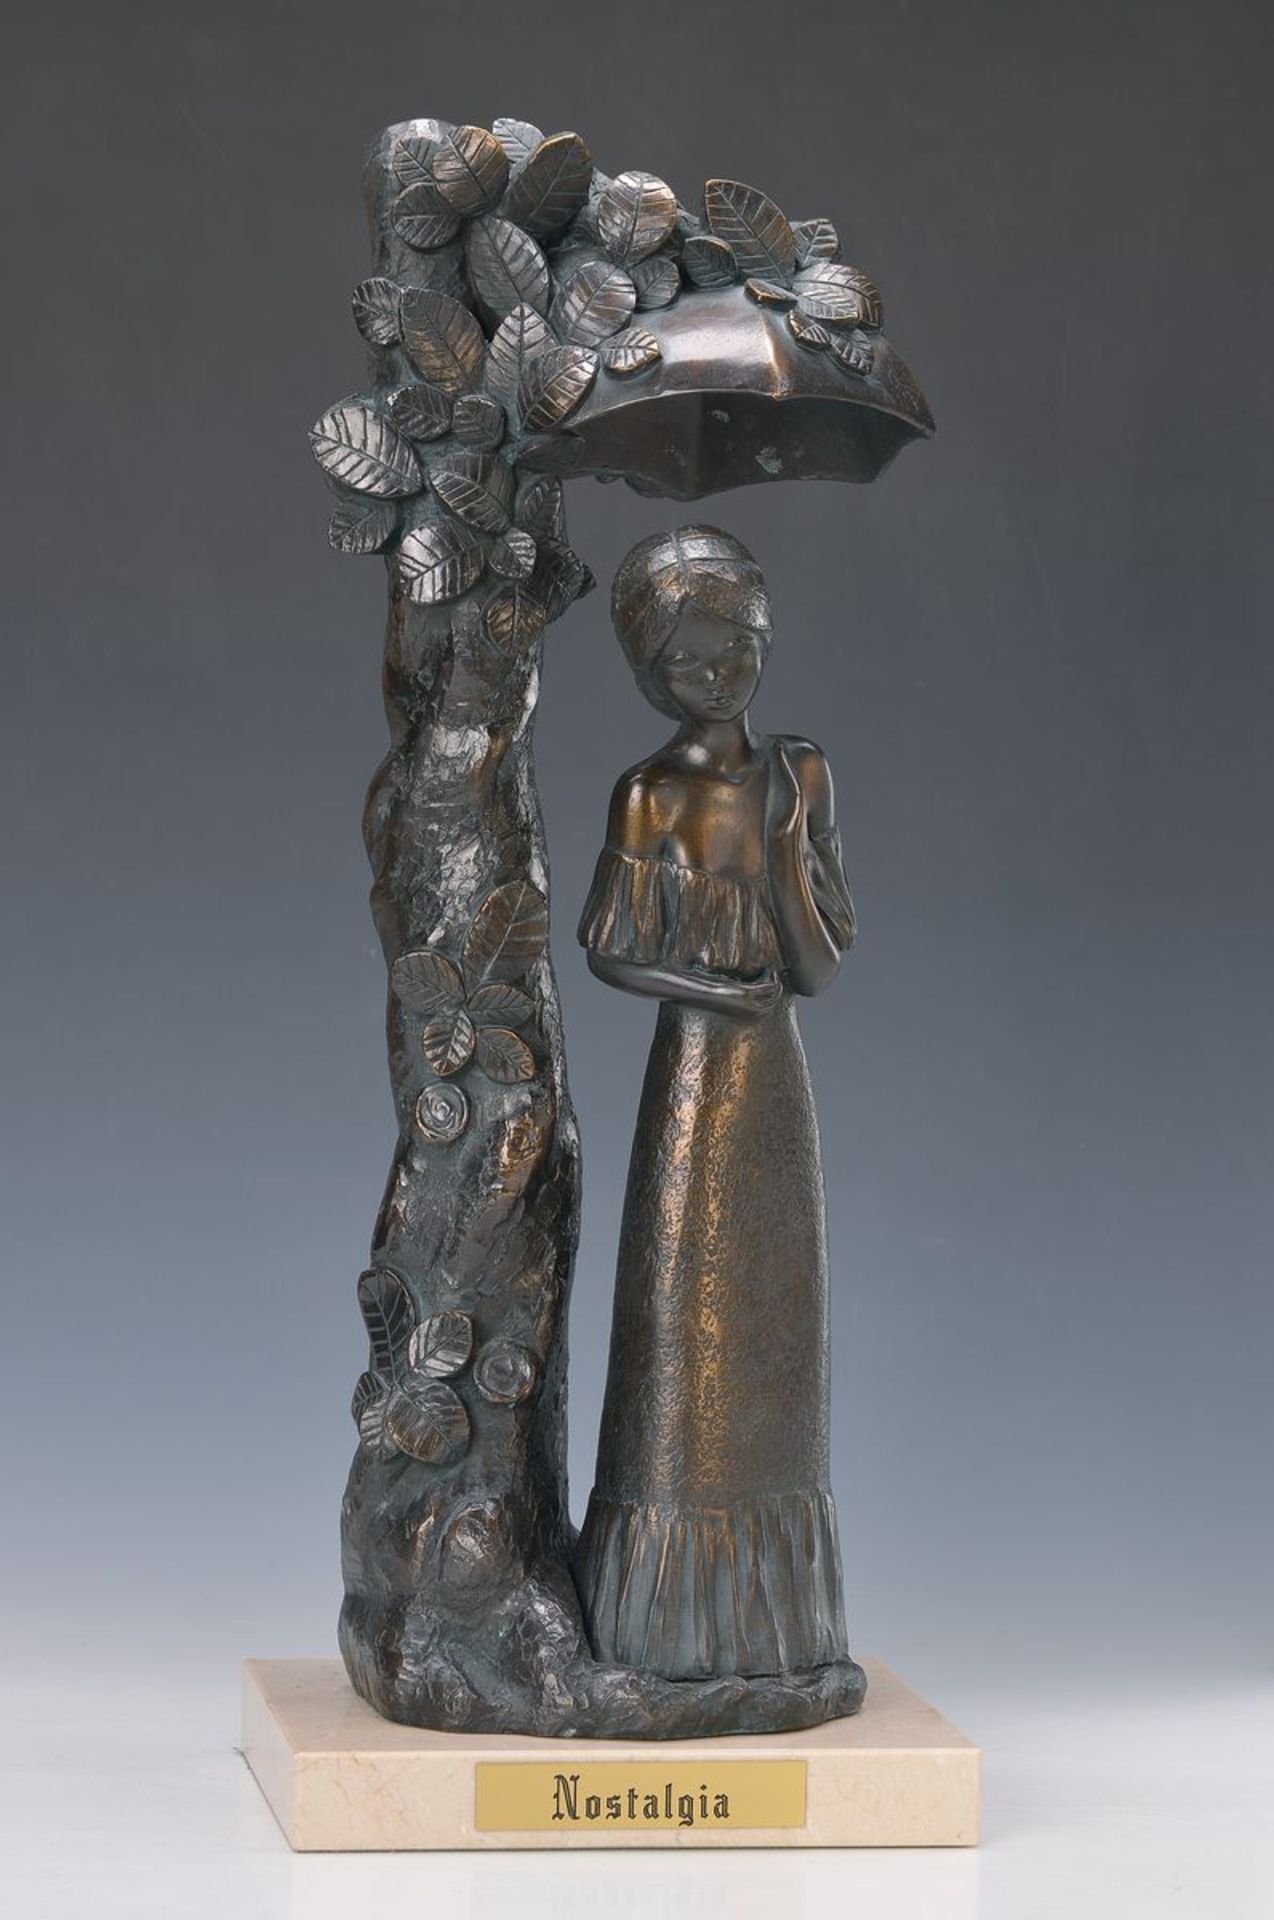 Große Bronzeskulptur, Italica, verso bezeichent Mod. Joses. Pat. 4012, auf Marmorsockel, H. 52 cmbig